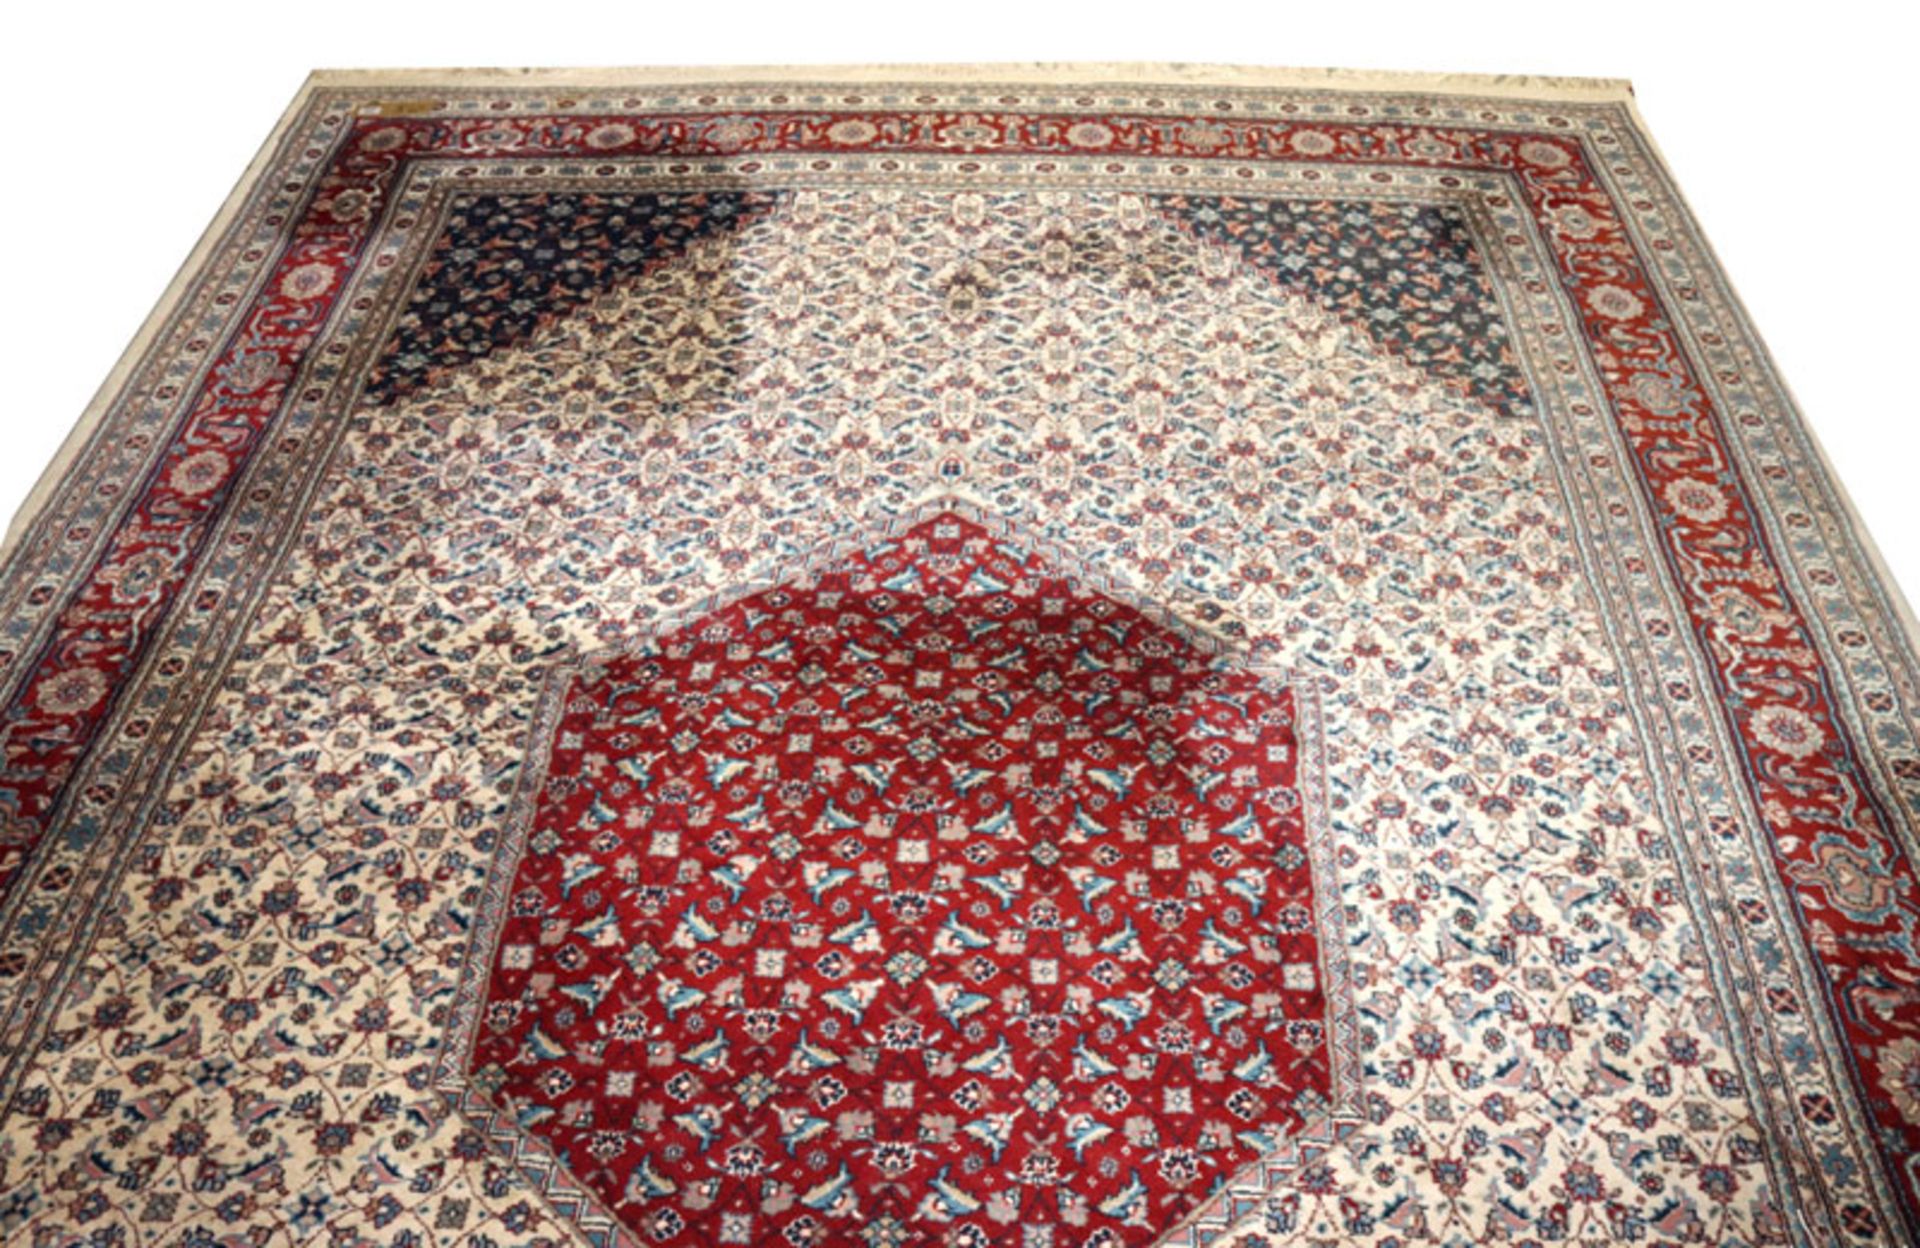 Teppich, Wiss, beige/rot/bunt, 350 cm x 246 cm, Gebrauchsspuren, teils fleckig